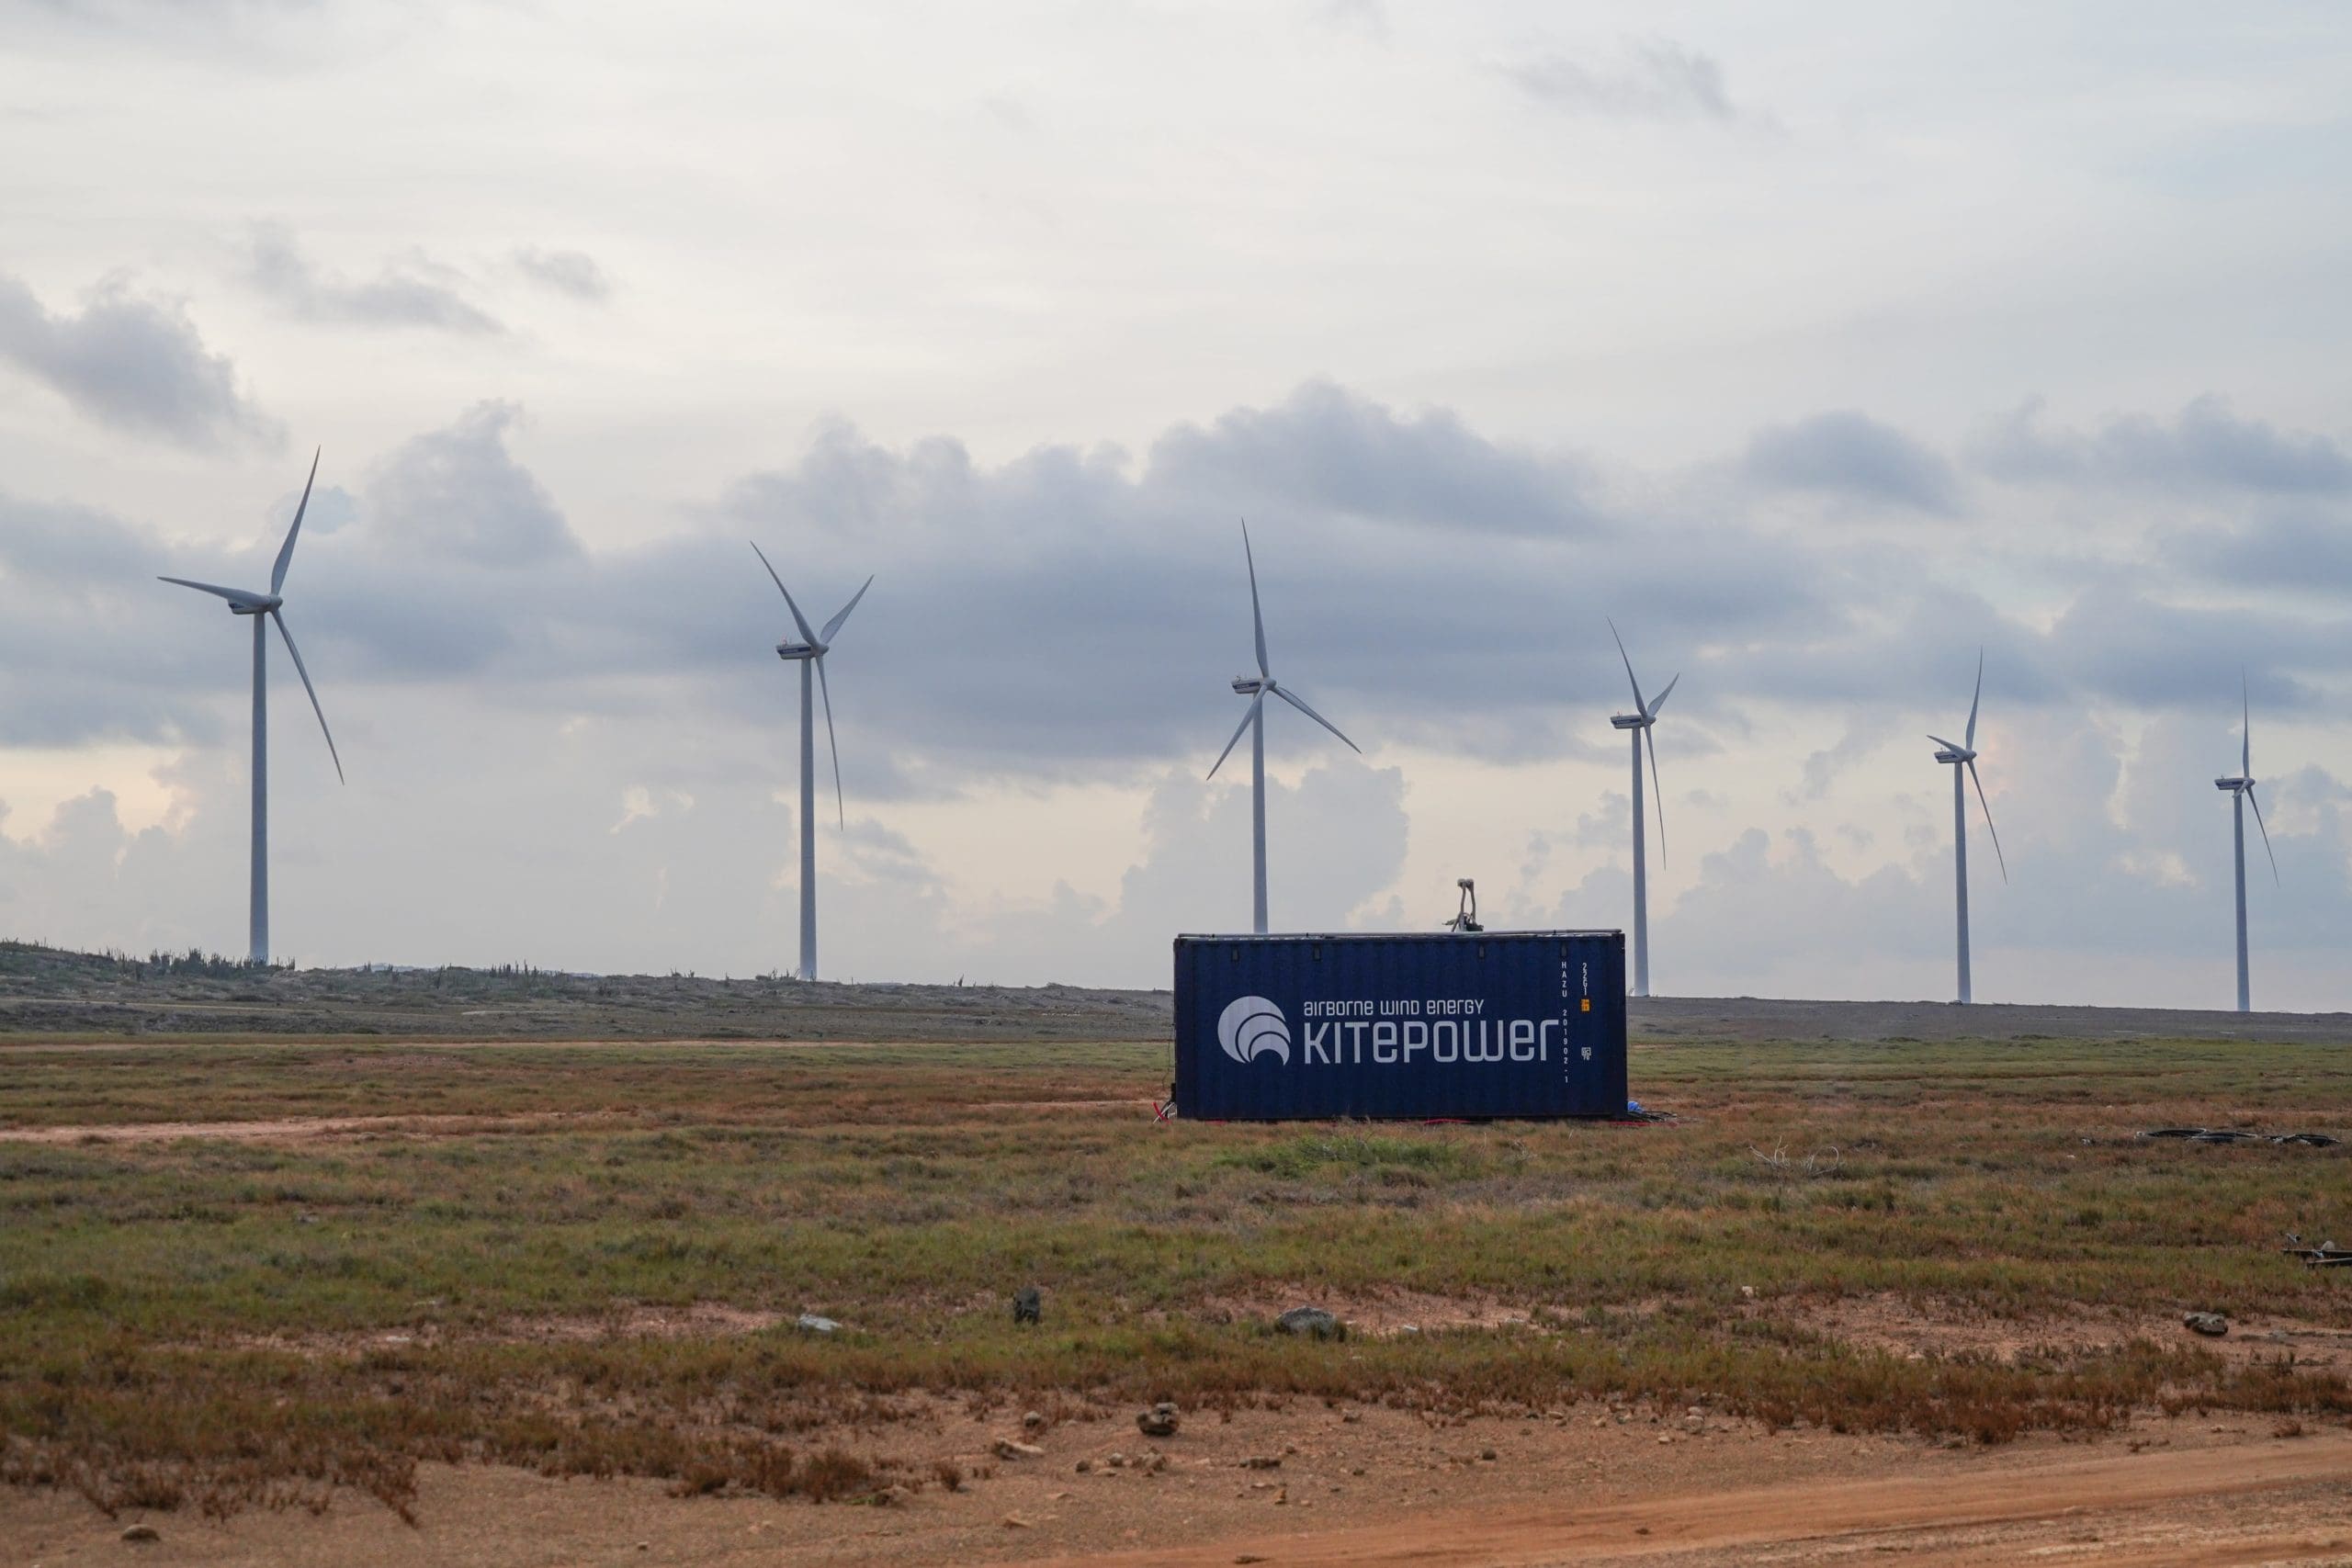 kitepower_setup_wind_turbines